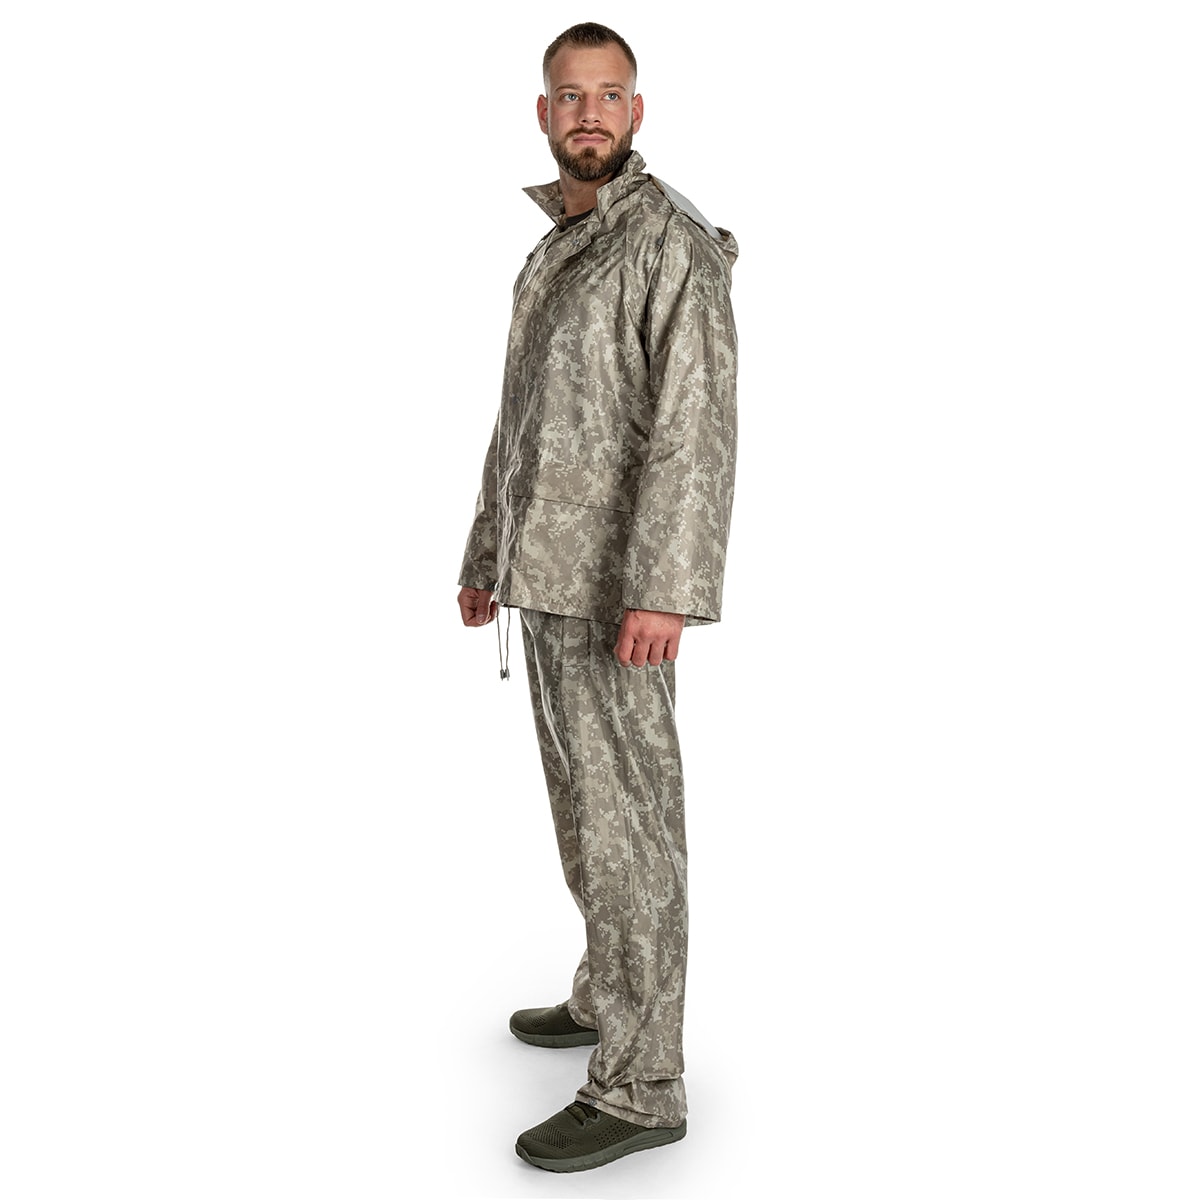 Komplet przeciwdeszczowy Mil-Tec kurtka+spodnie - AT-Digital 